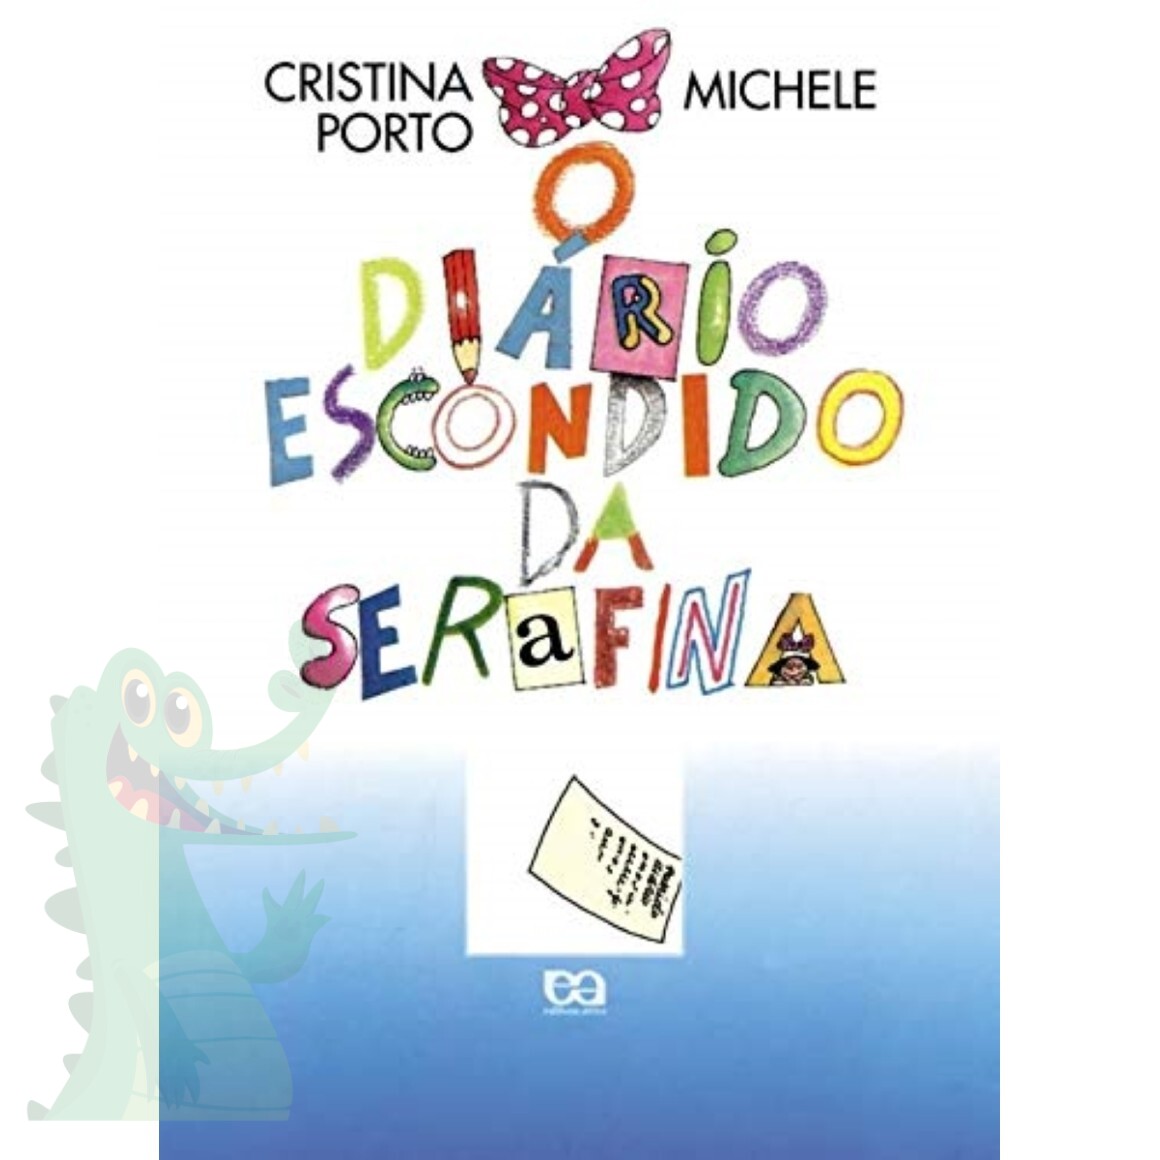  Caderno de Desenho : Livro de Colorir infantil Menino Menina, Coloração 100 Grandes Páginas Brancas A4